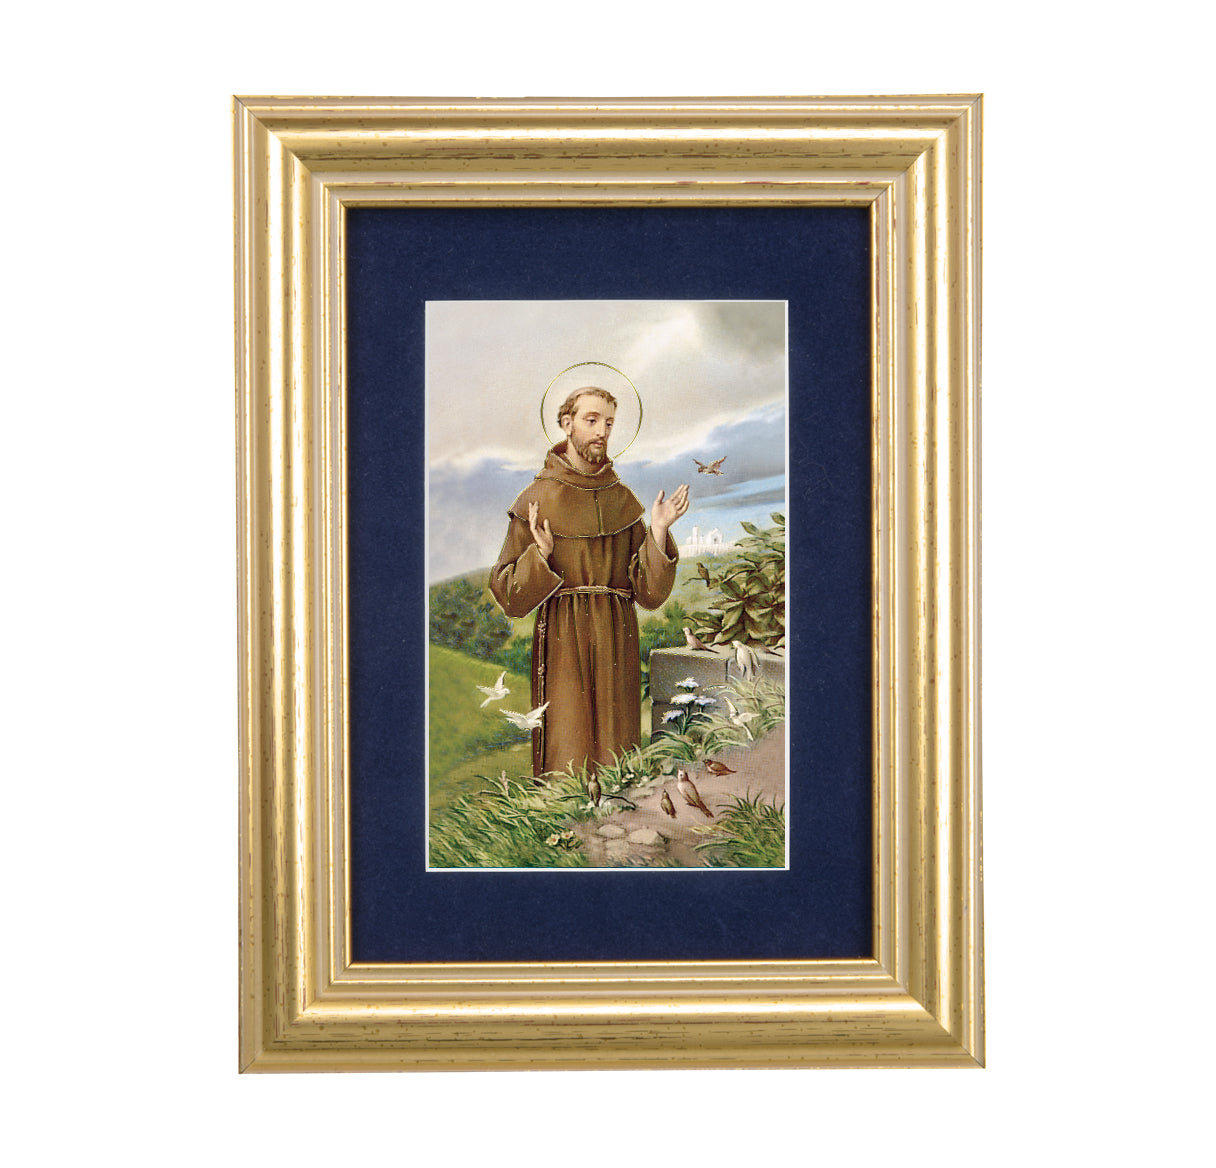 St. Francis Gold Framed Art with Blue Velvet Matting